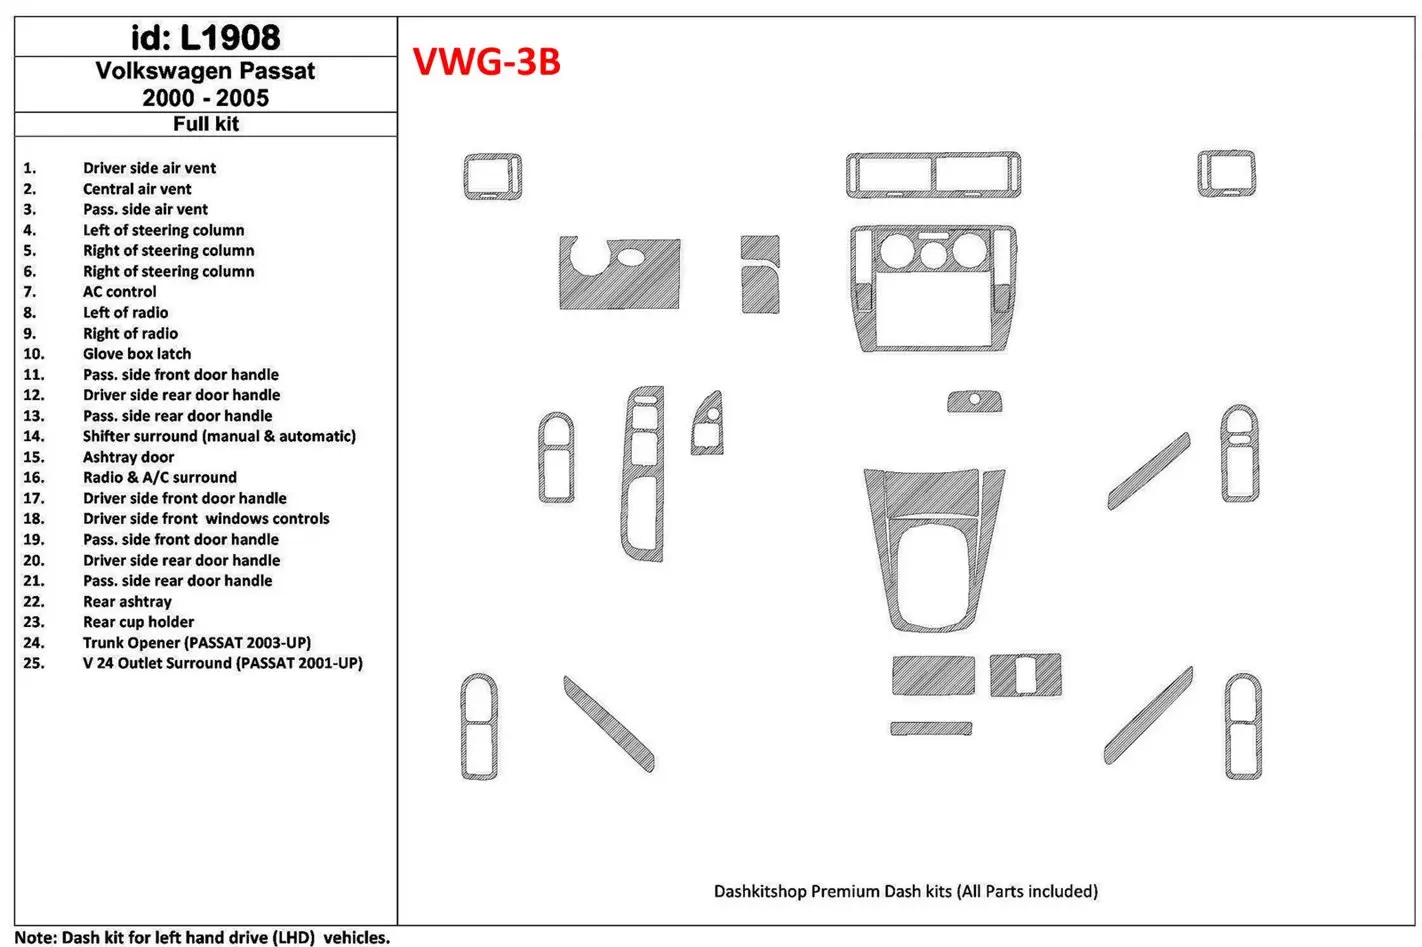 Volkswagen Passat 2000-2005 Ensemble Complet, 24 Parts set BD Kit la décoration du tableau de bord - 1 - habillage decor de tabl